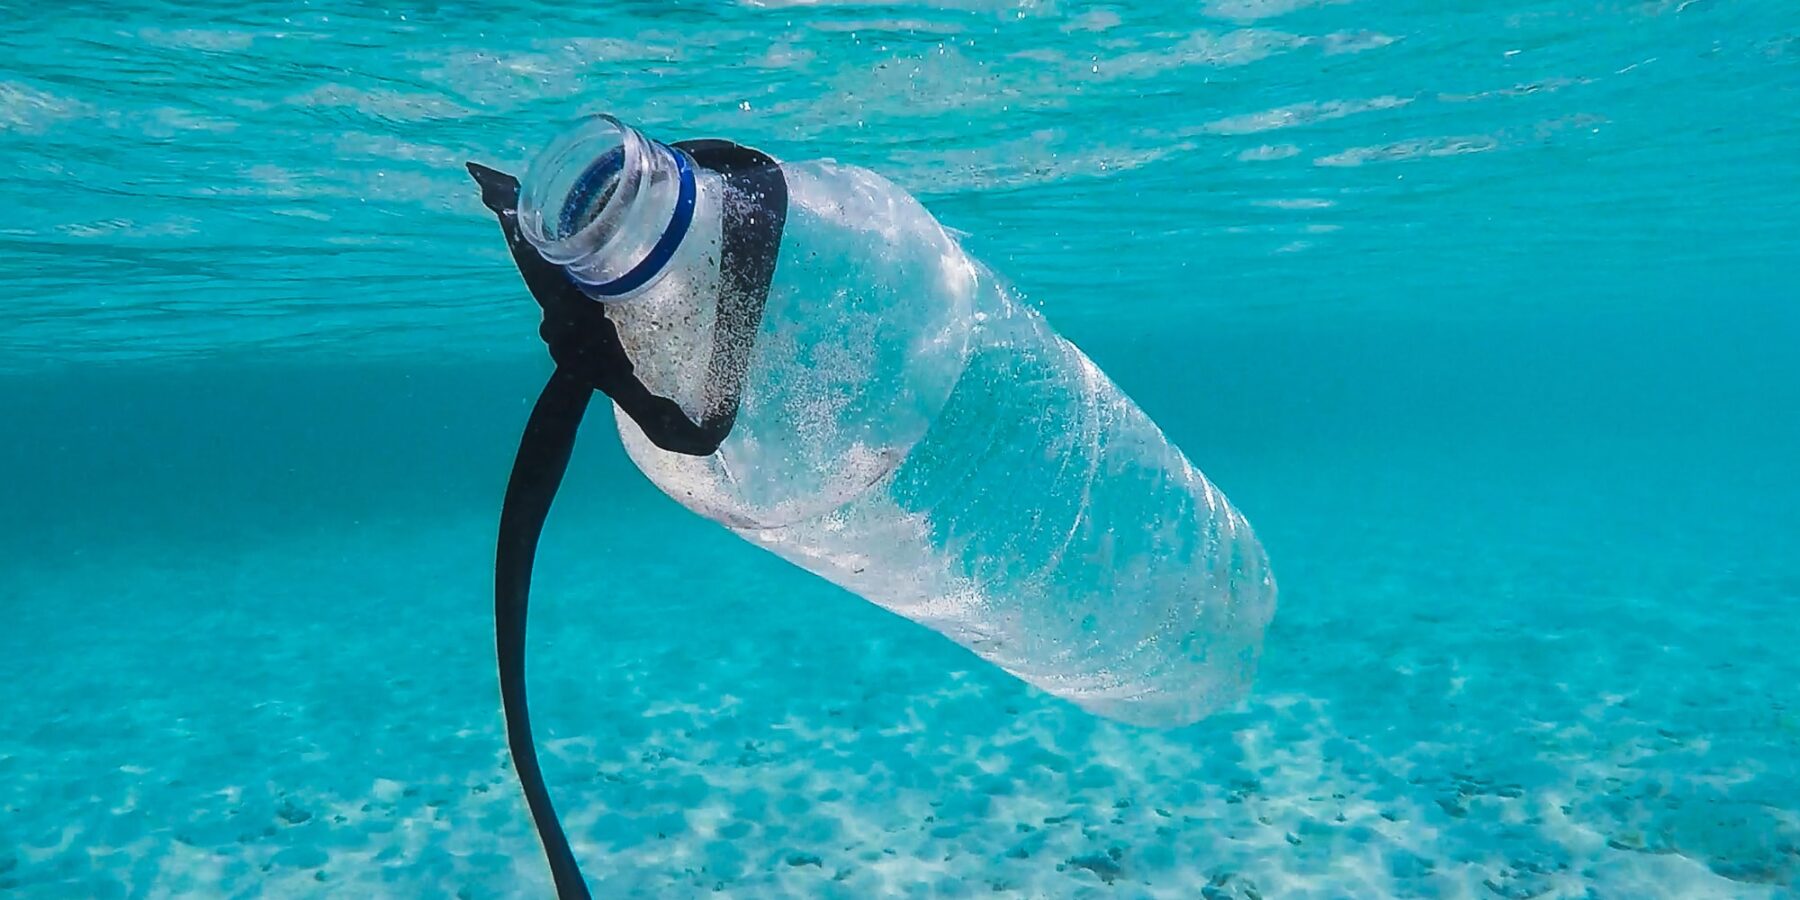 Warstwa śmieci na wodzie Pacyfiku #ekosystem #oceany #planeta #plastik #śmieci #woda - ciekawostki.app